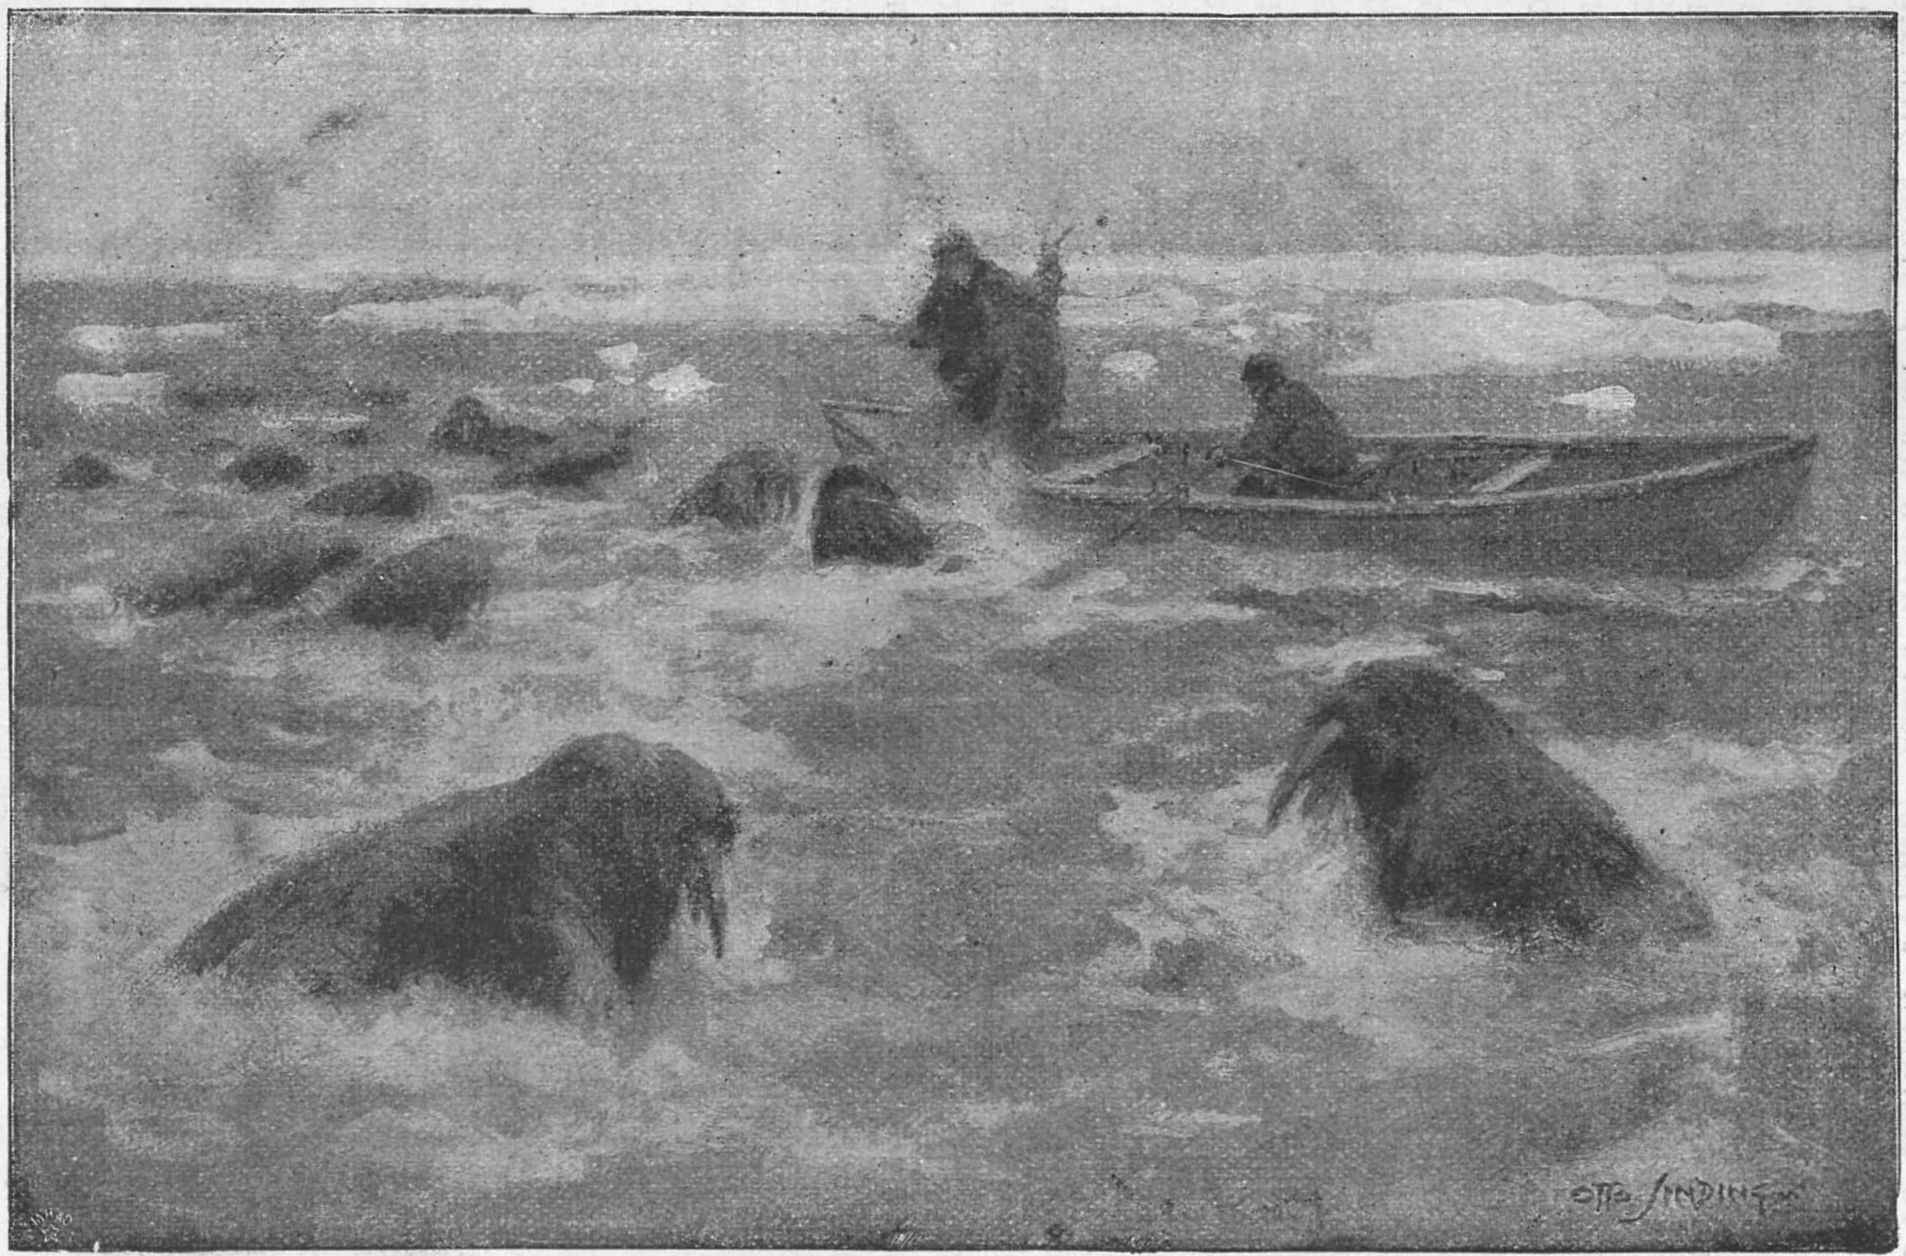 Охота на моржей около Таймырского полуострова. Рисунок Отто Синдинга